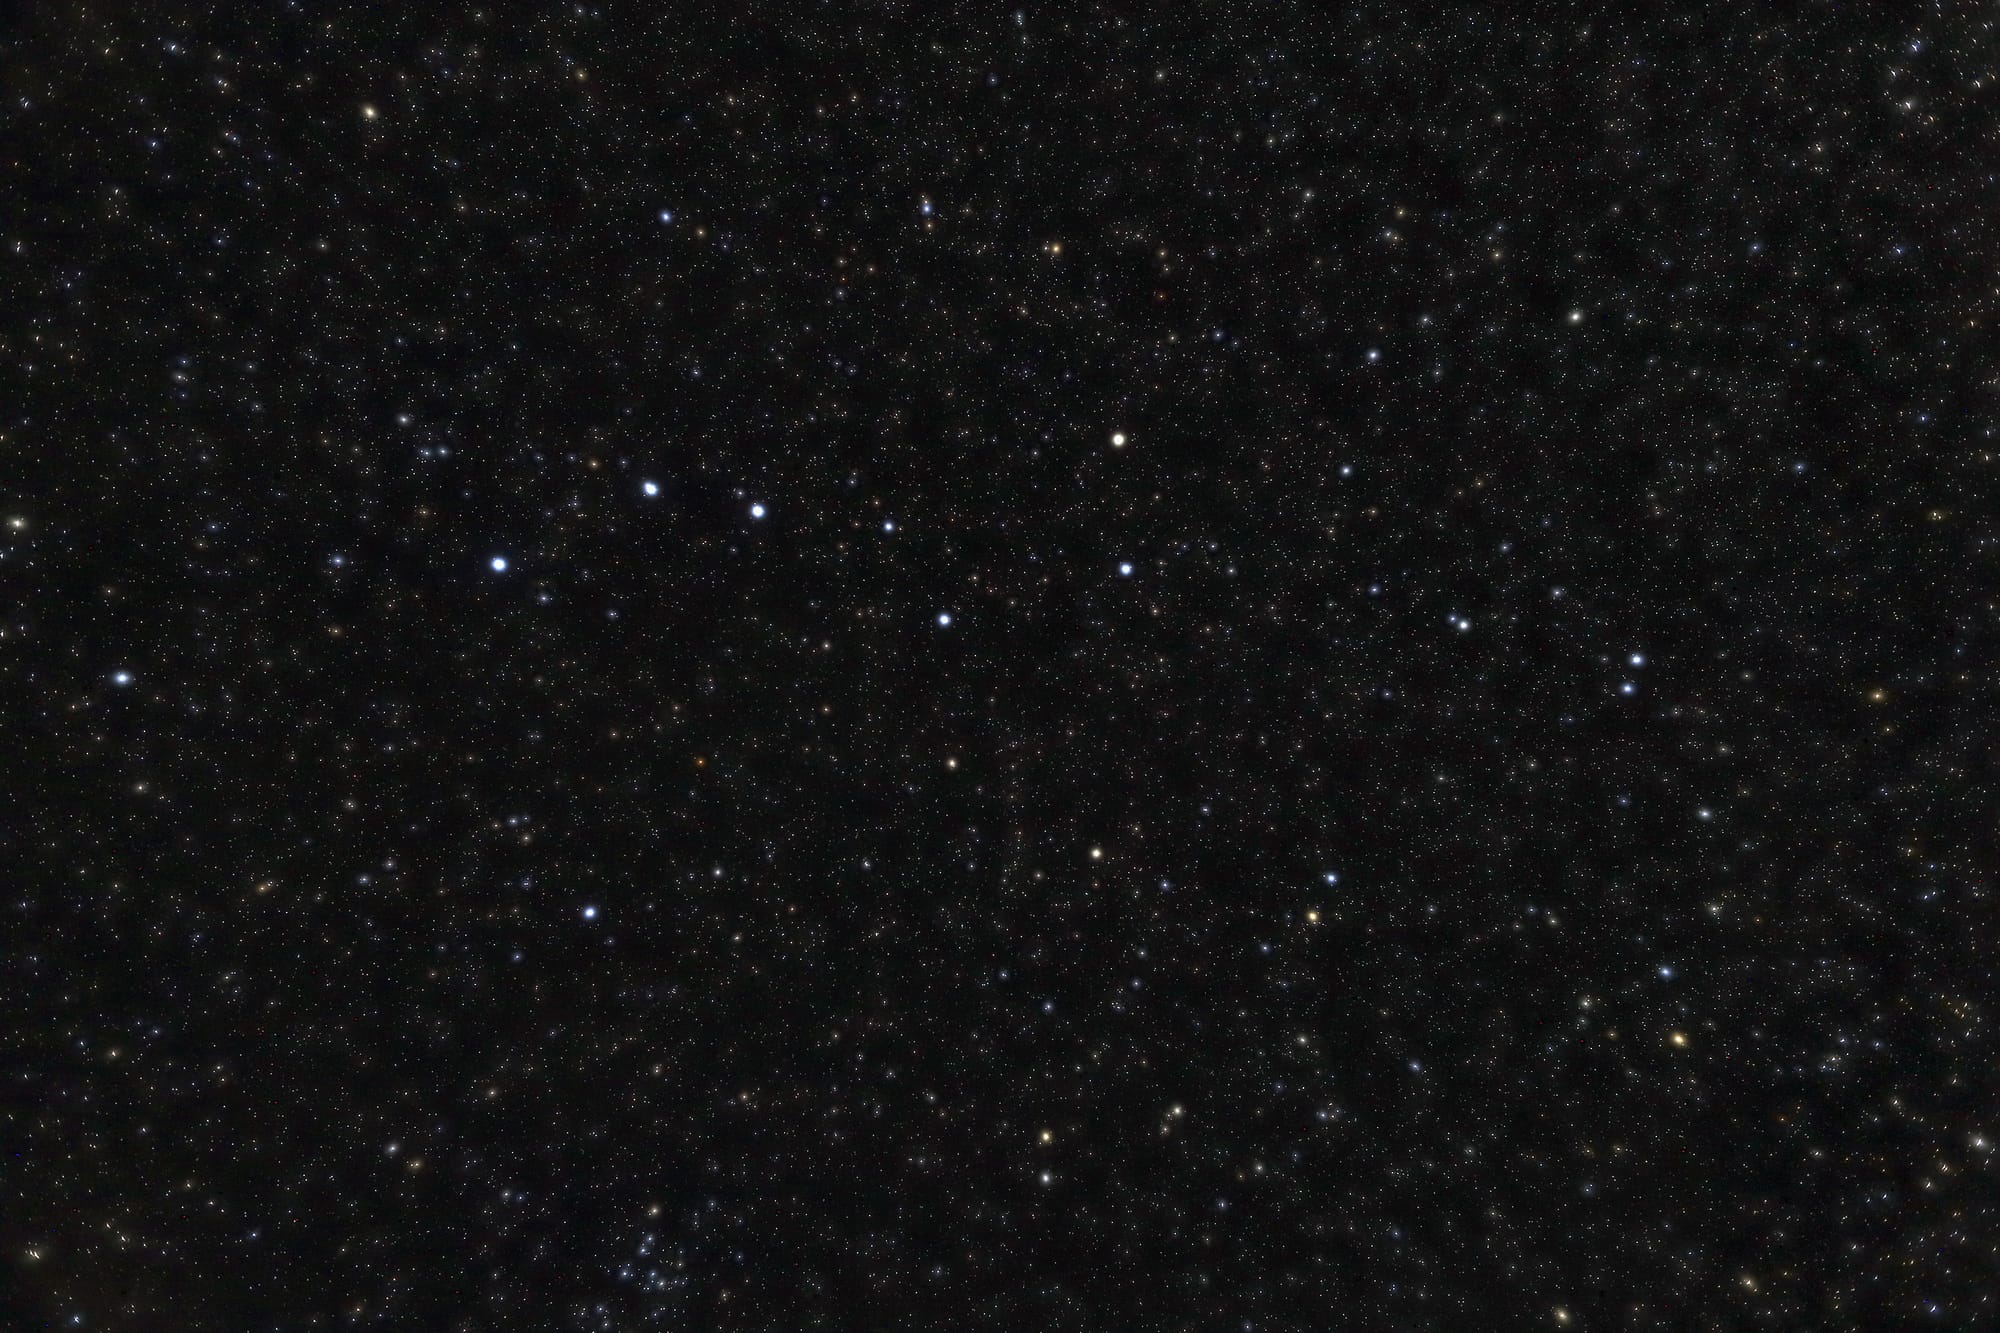 Der Große Bär (Ursa Major) ist ein ausgedehntes Sternbild am Nordhimmel, das eine der bekanntesten Sternkonfigurationen enthält, den aus sieben Sternen bestehenden Großen Wagen.